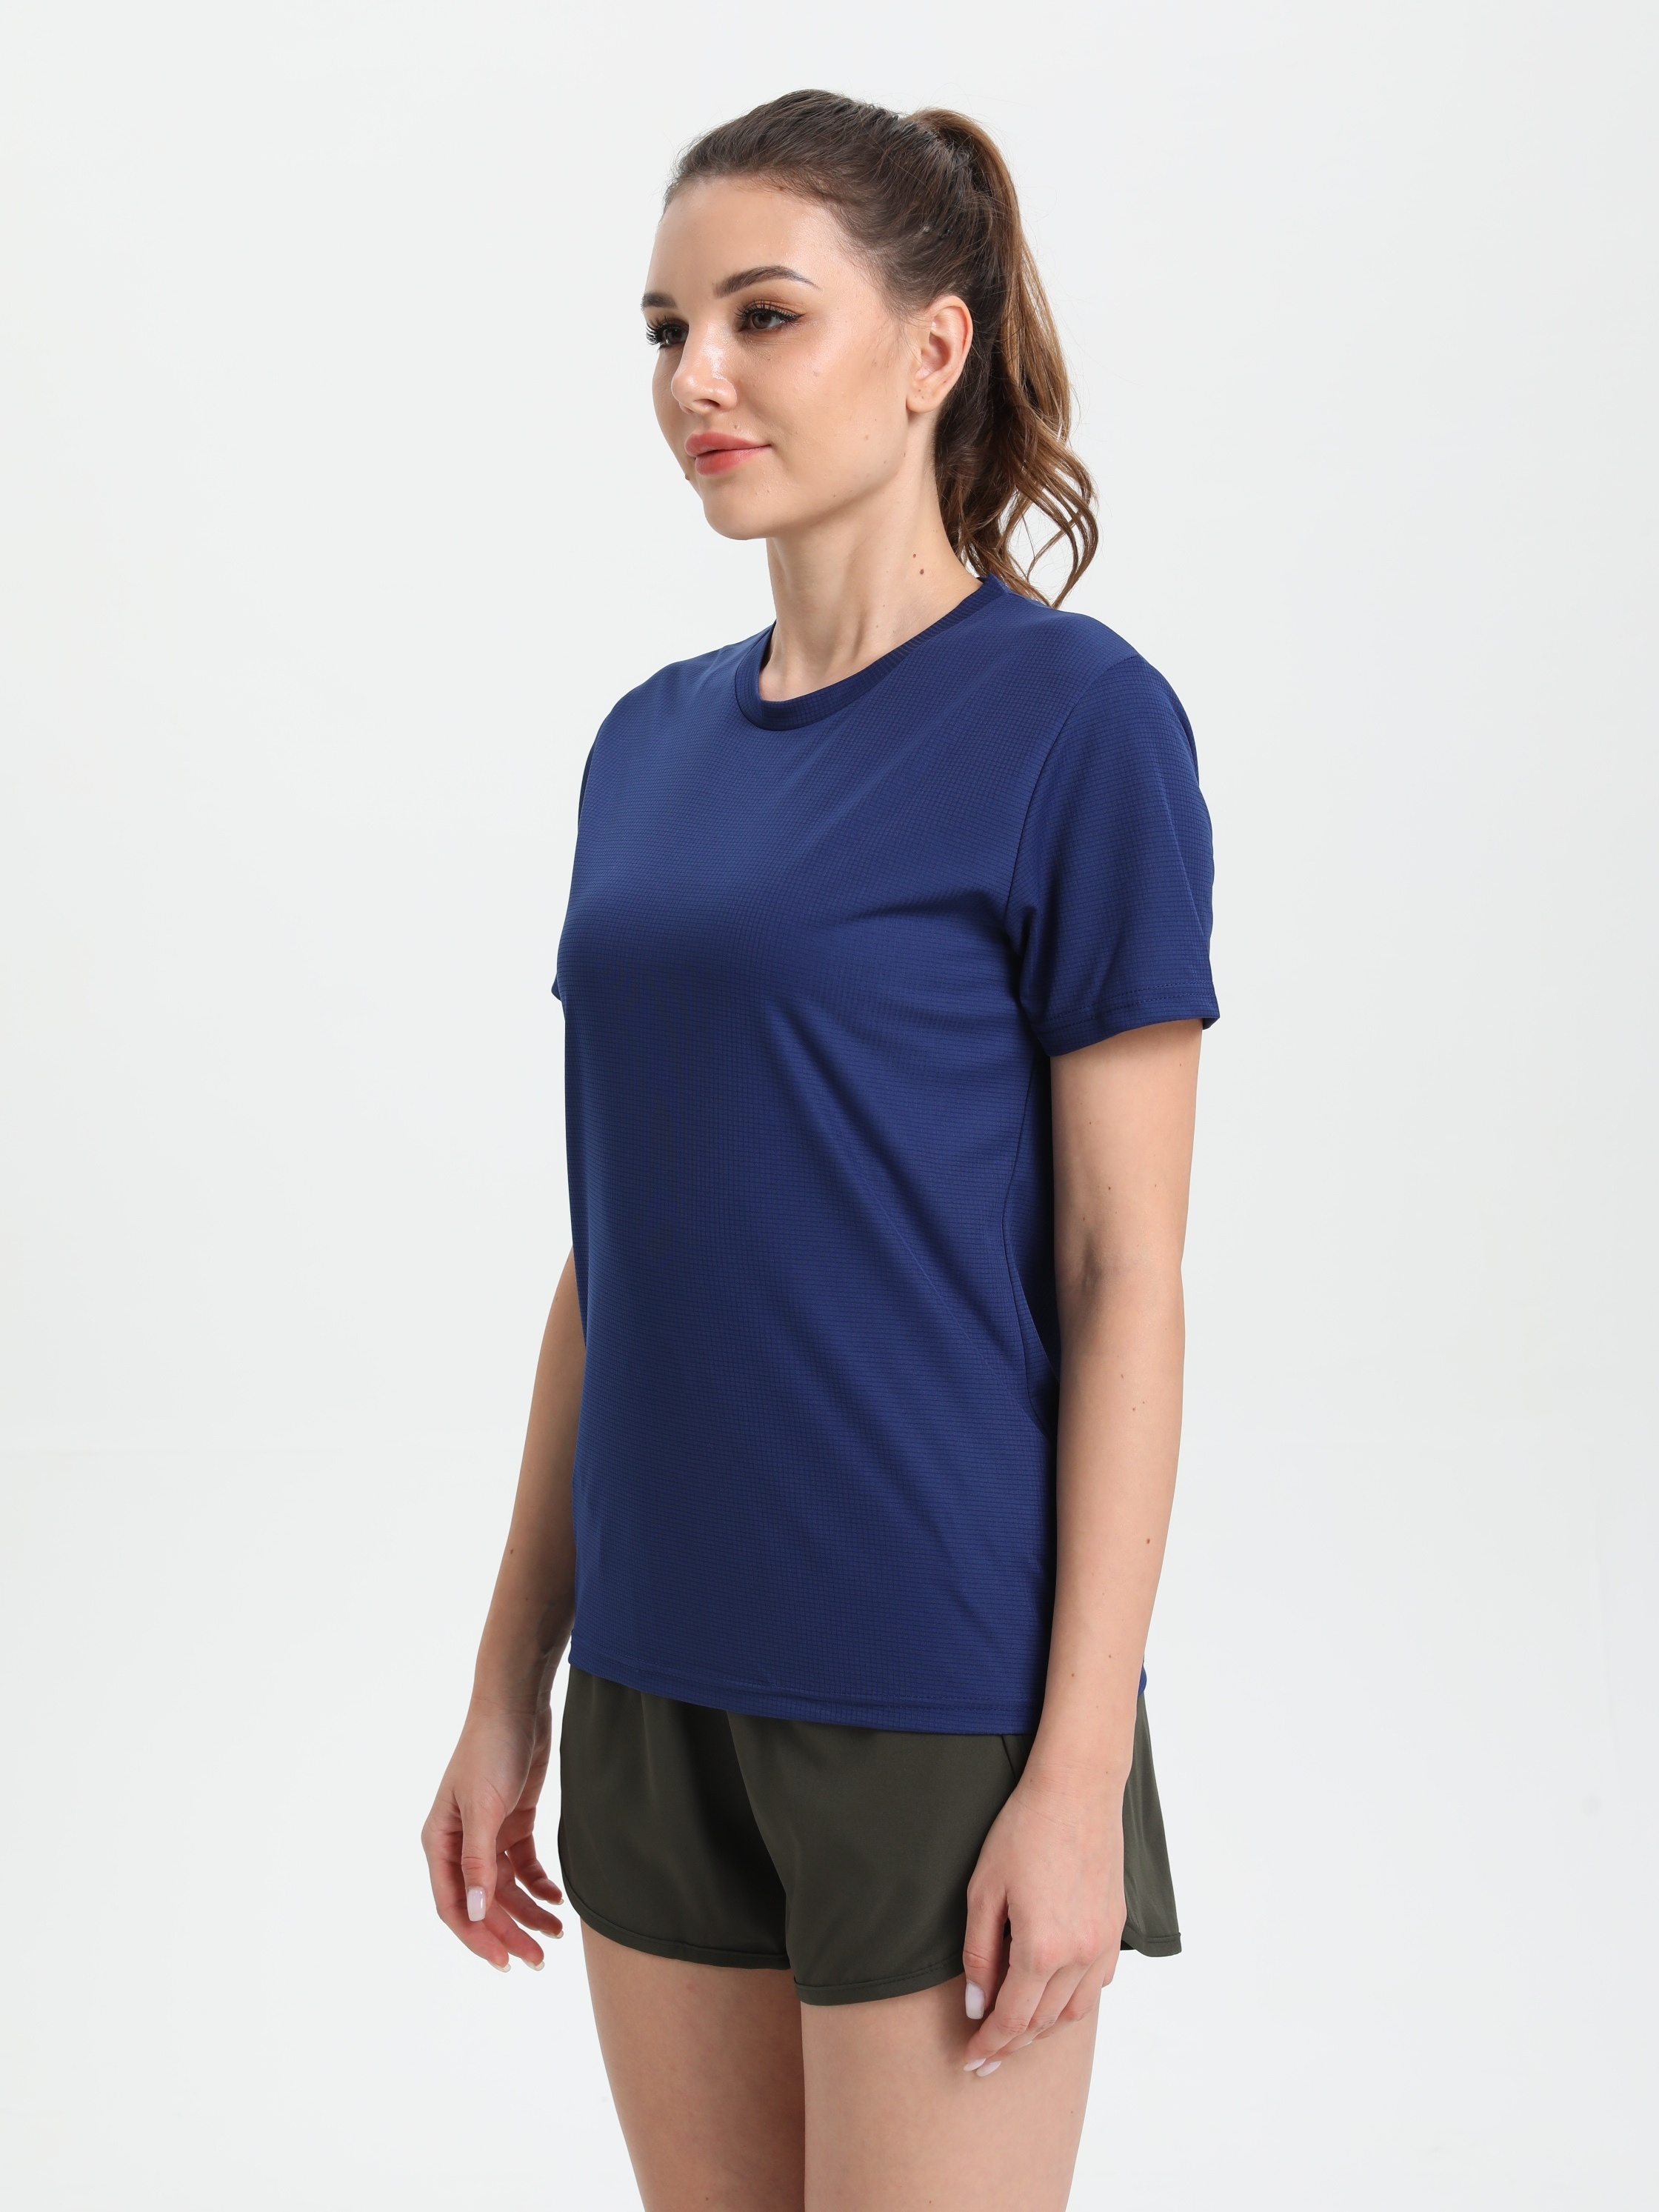 Lucky Brand Womens Crew Neck T Shirt Top Workout Short Sleeve Blue Siz –  Goodfair